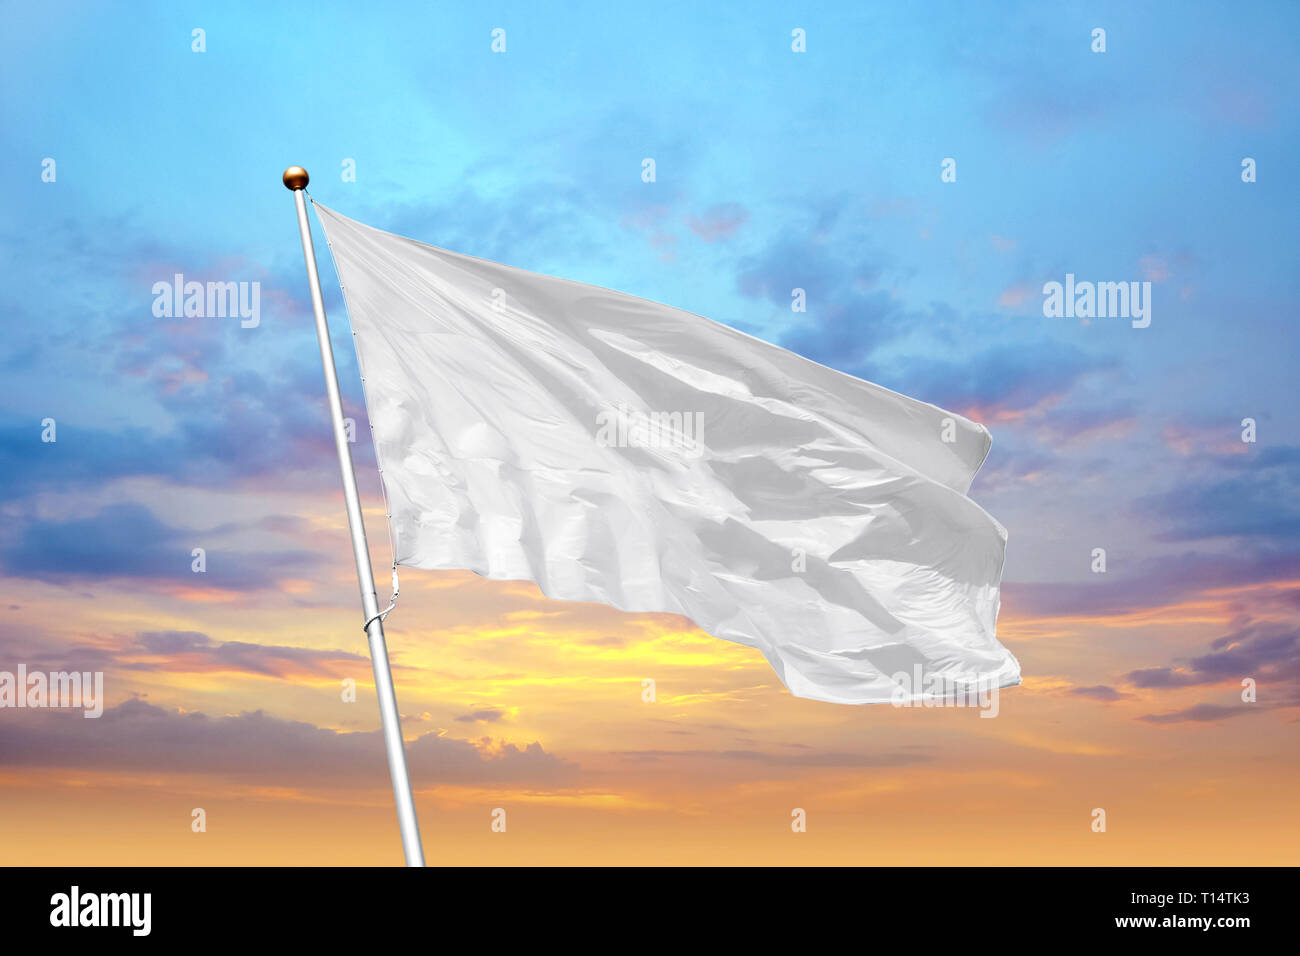 Leere weisse Flagge auf der Pole winken im Wind in den Hintergrund des bewölkten Himmel bei Sonnenuntergang. Bunte outdoor Bild mit leeren Flagge mockup Stockfoto